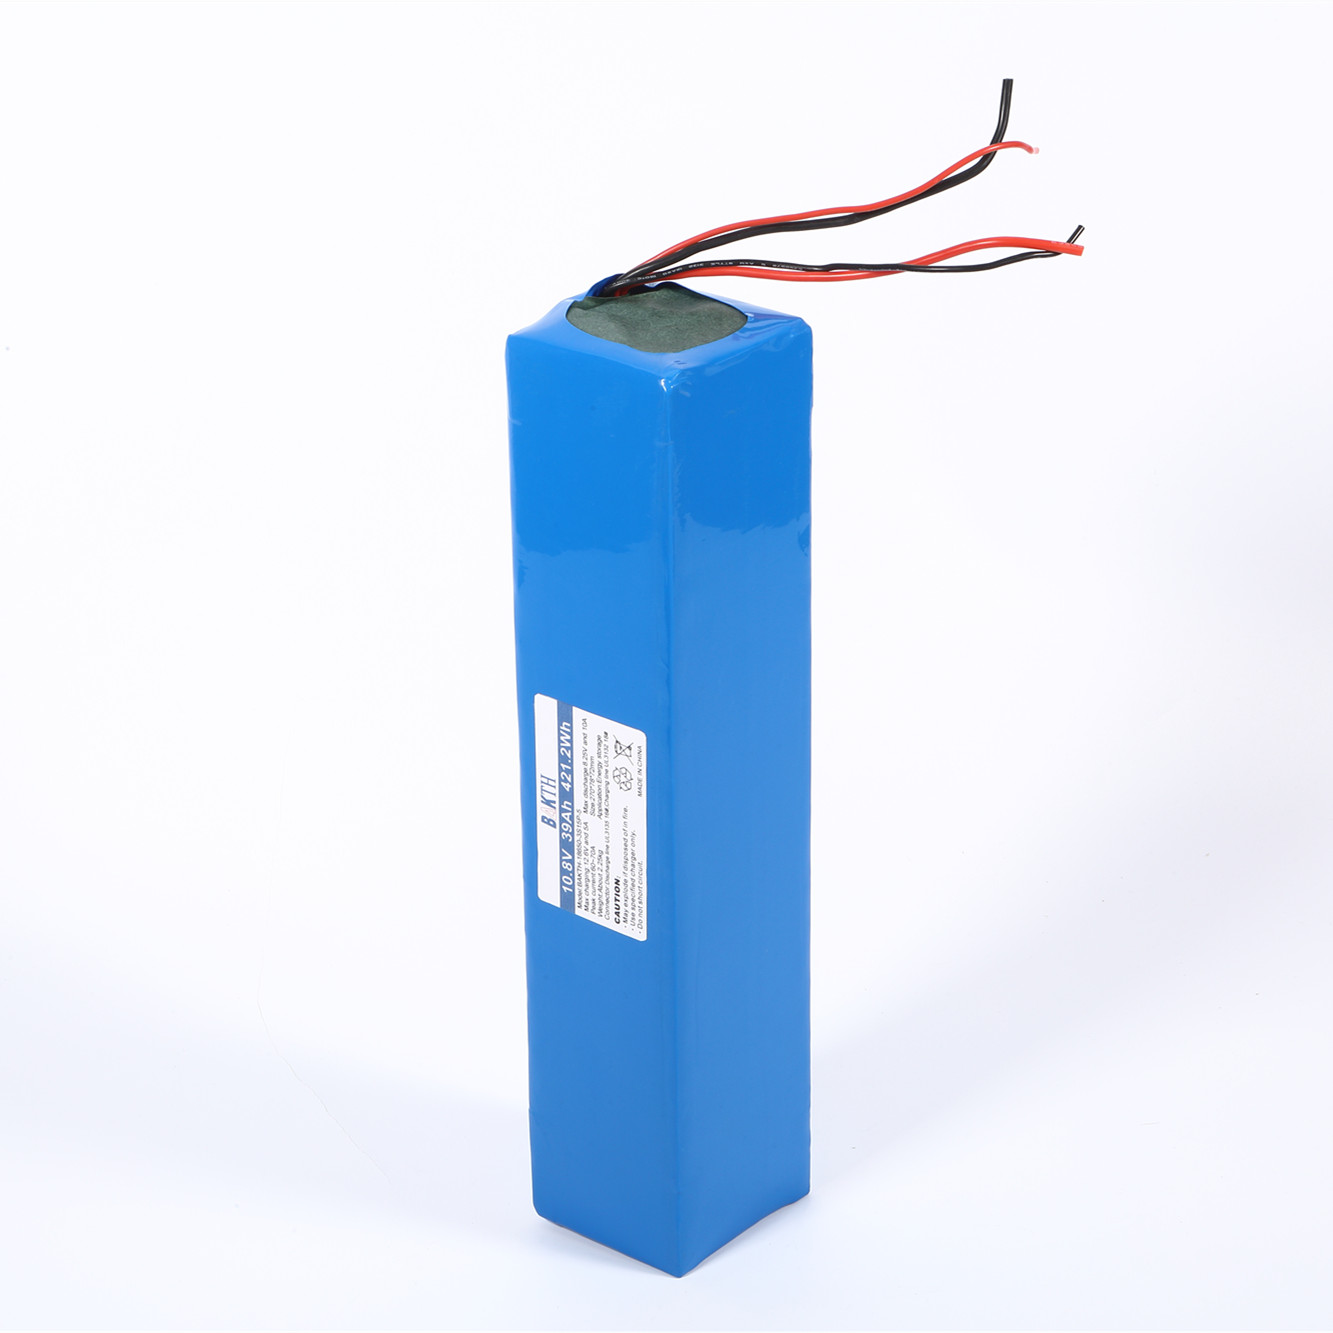 Baterias 13s6p azul 18650 para luz solar